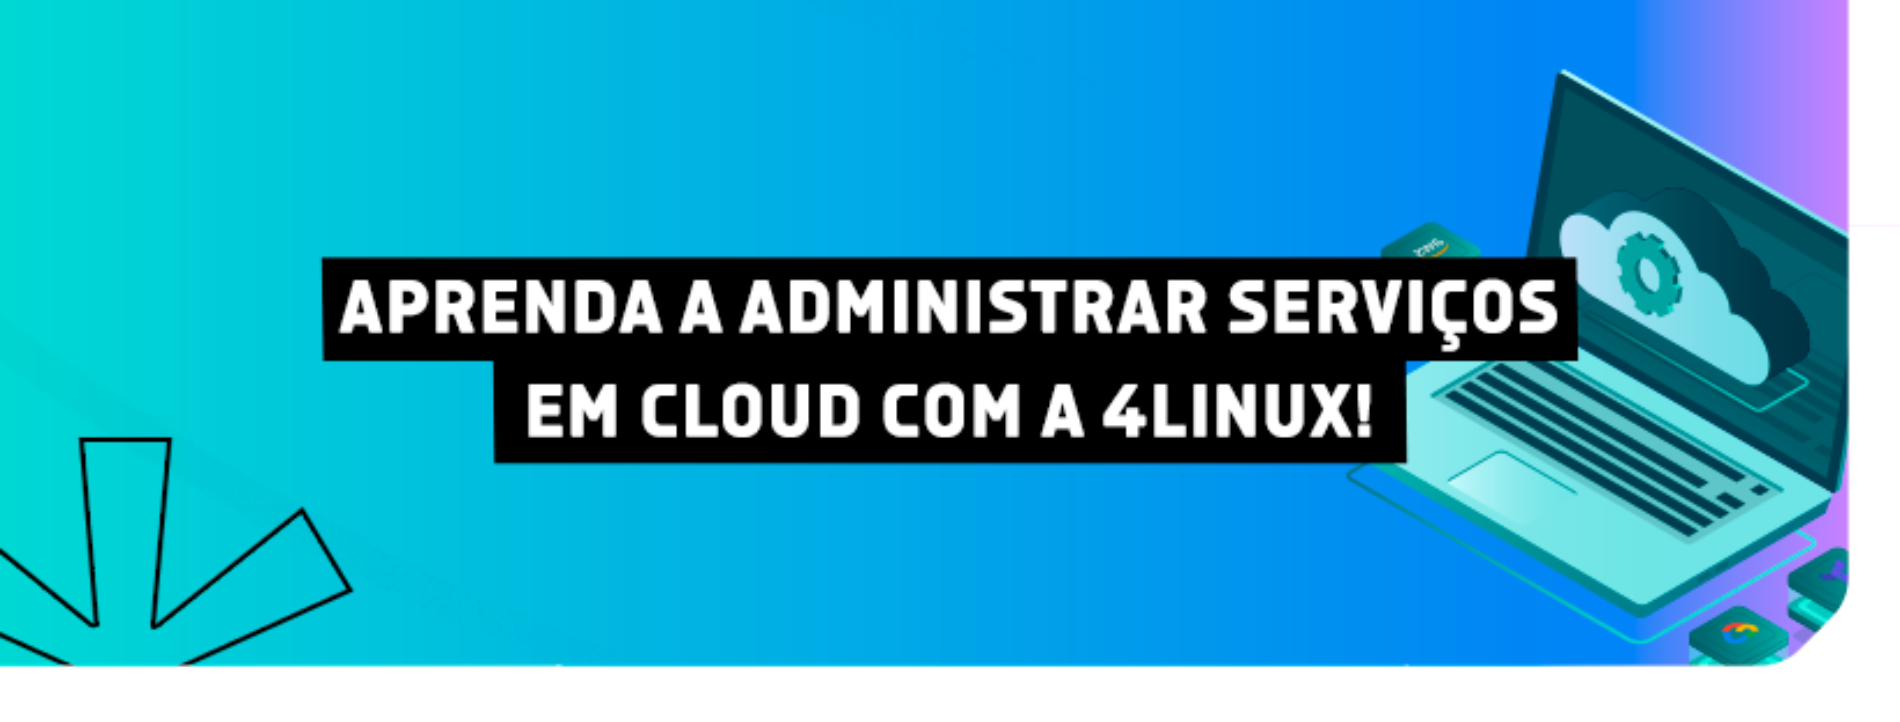 Amplie seus conhecimentos em Cloud com o novo curso da 4Linux